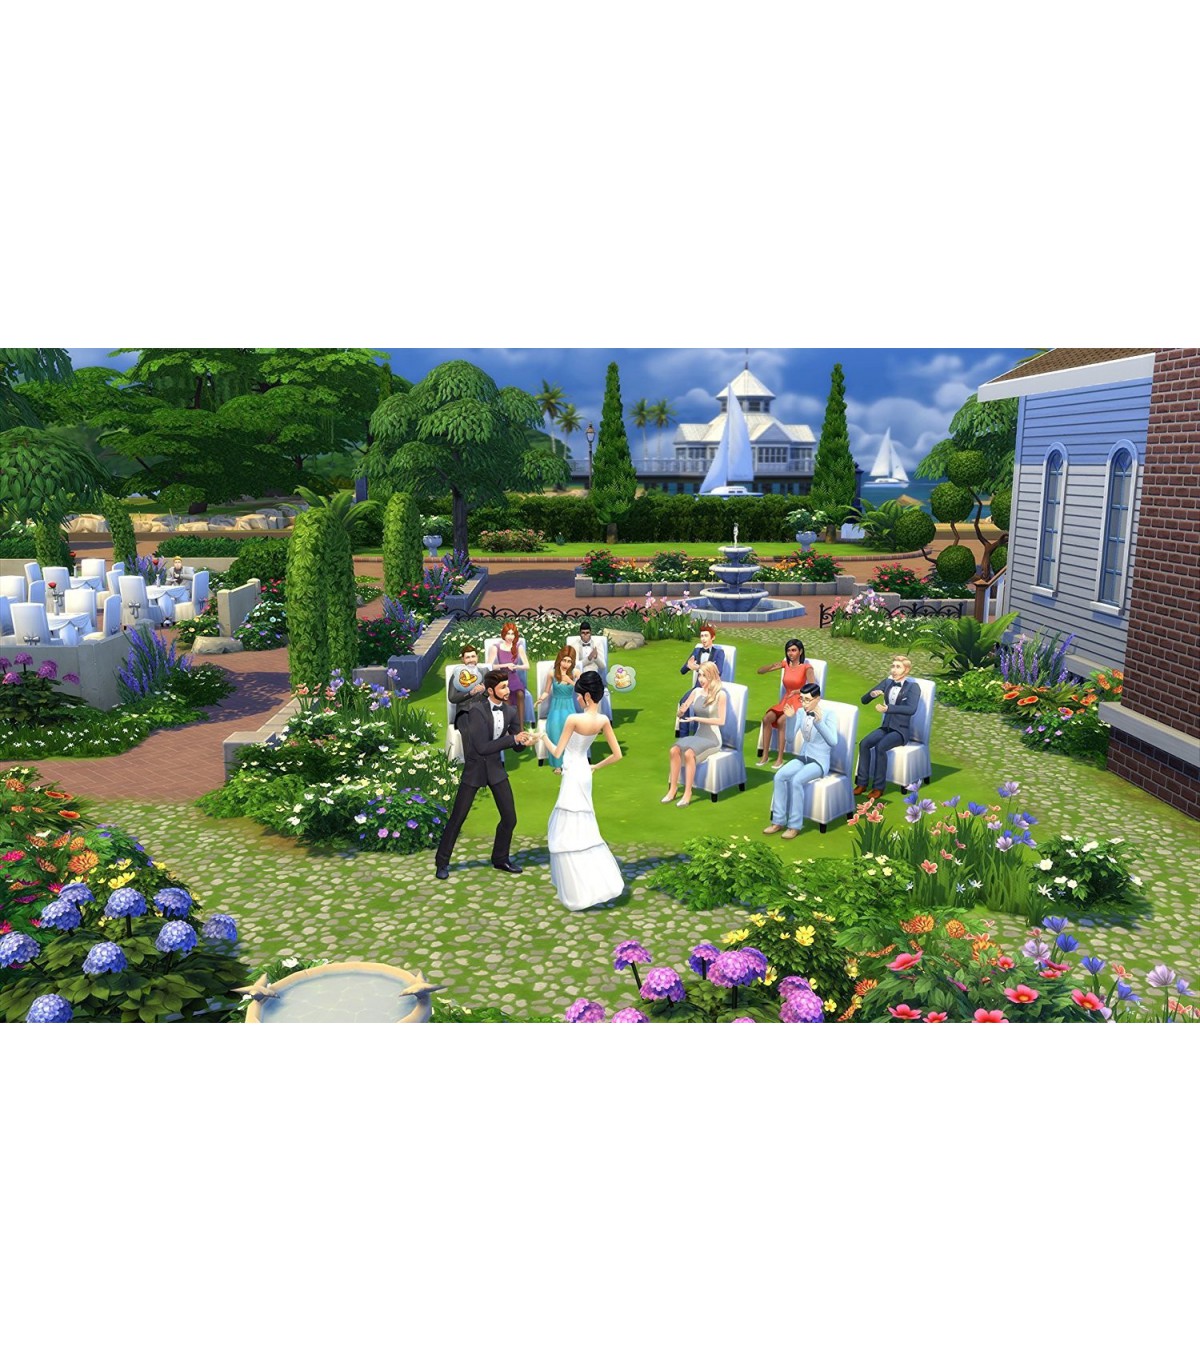 بازی The Sims 4 - پلی استیشن 4